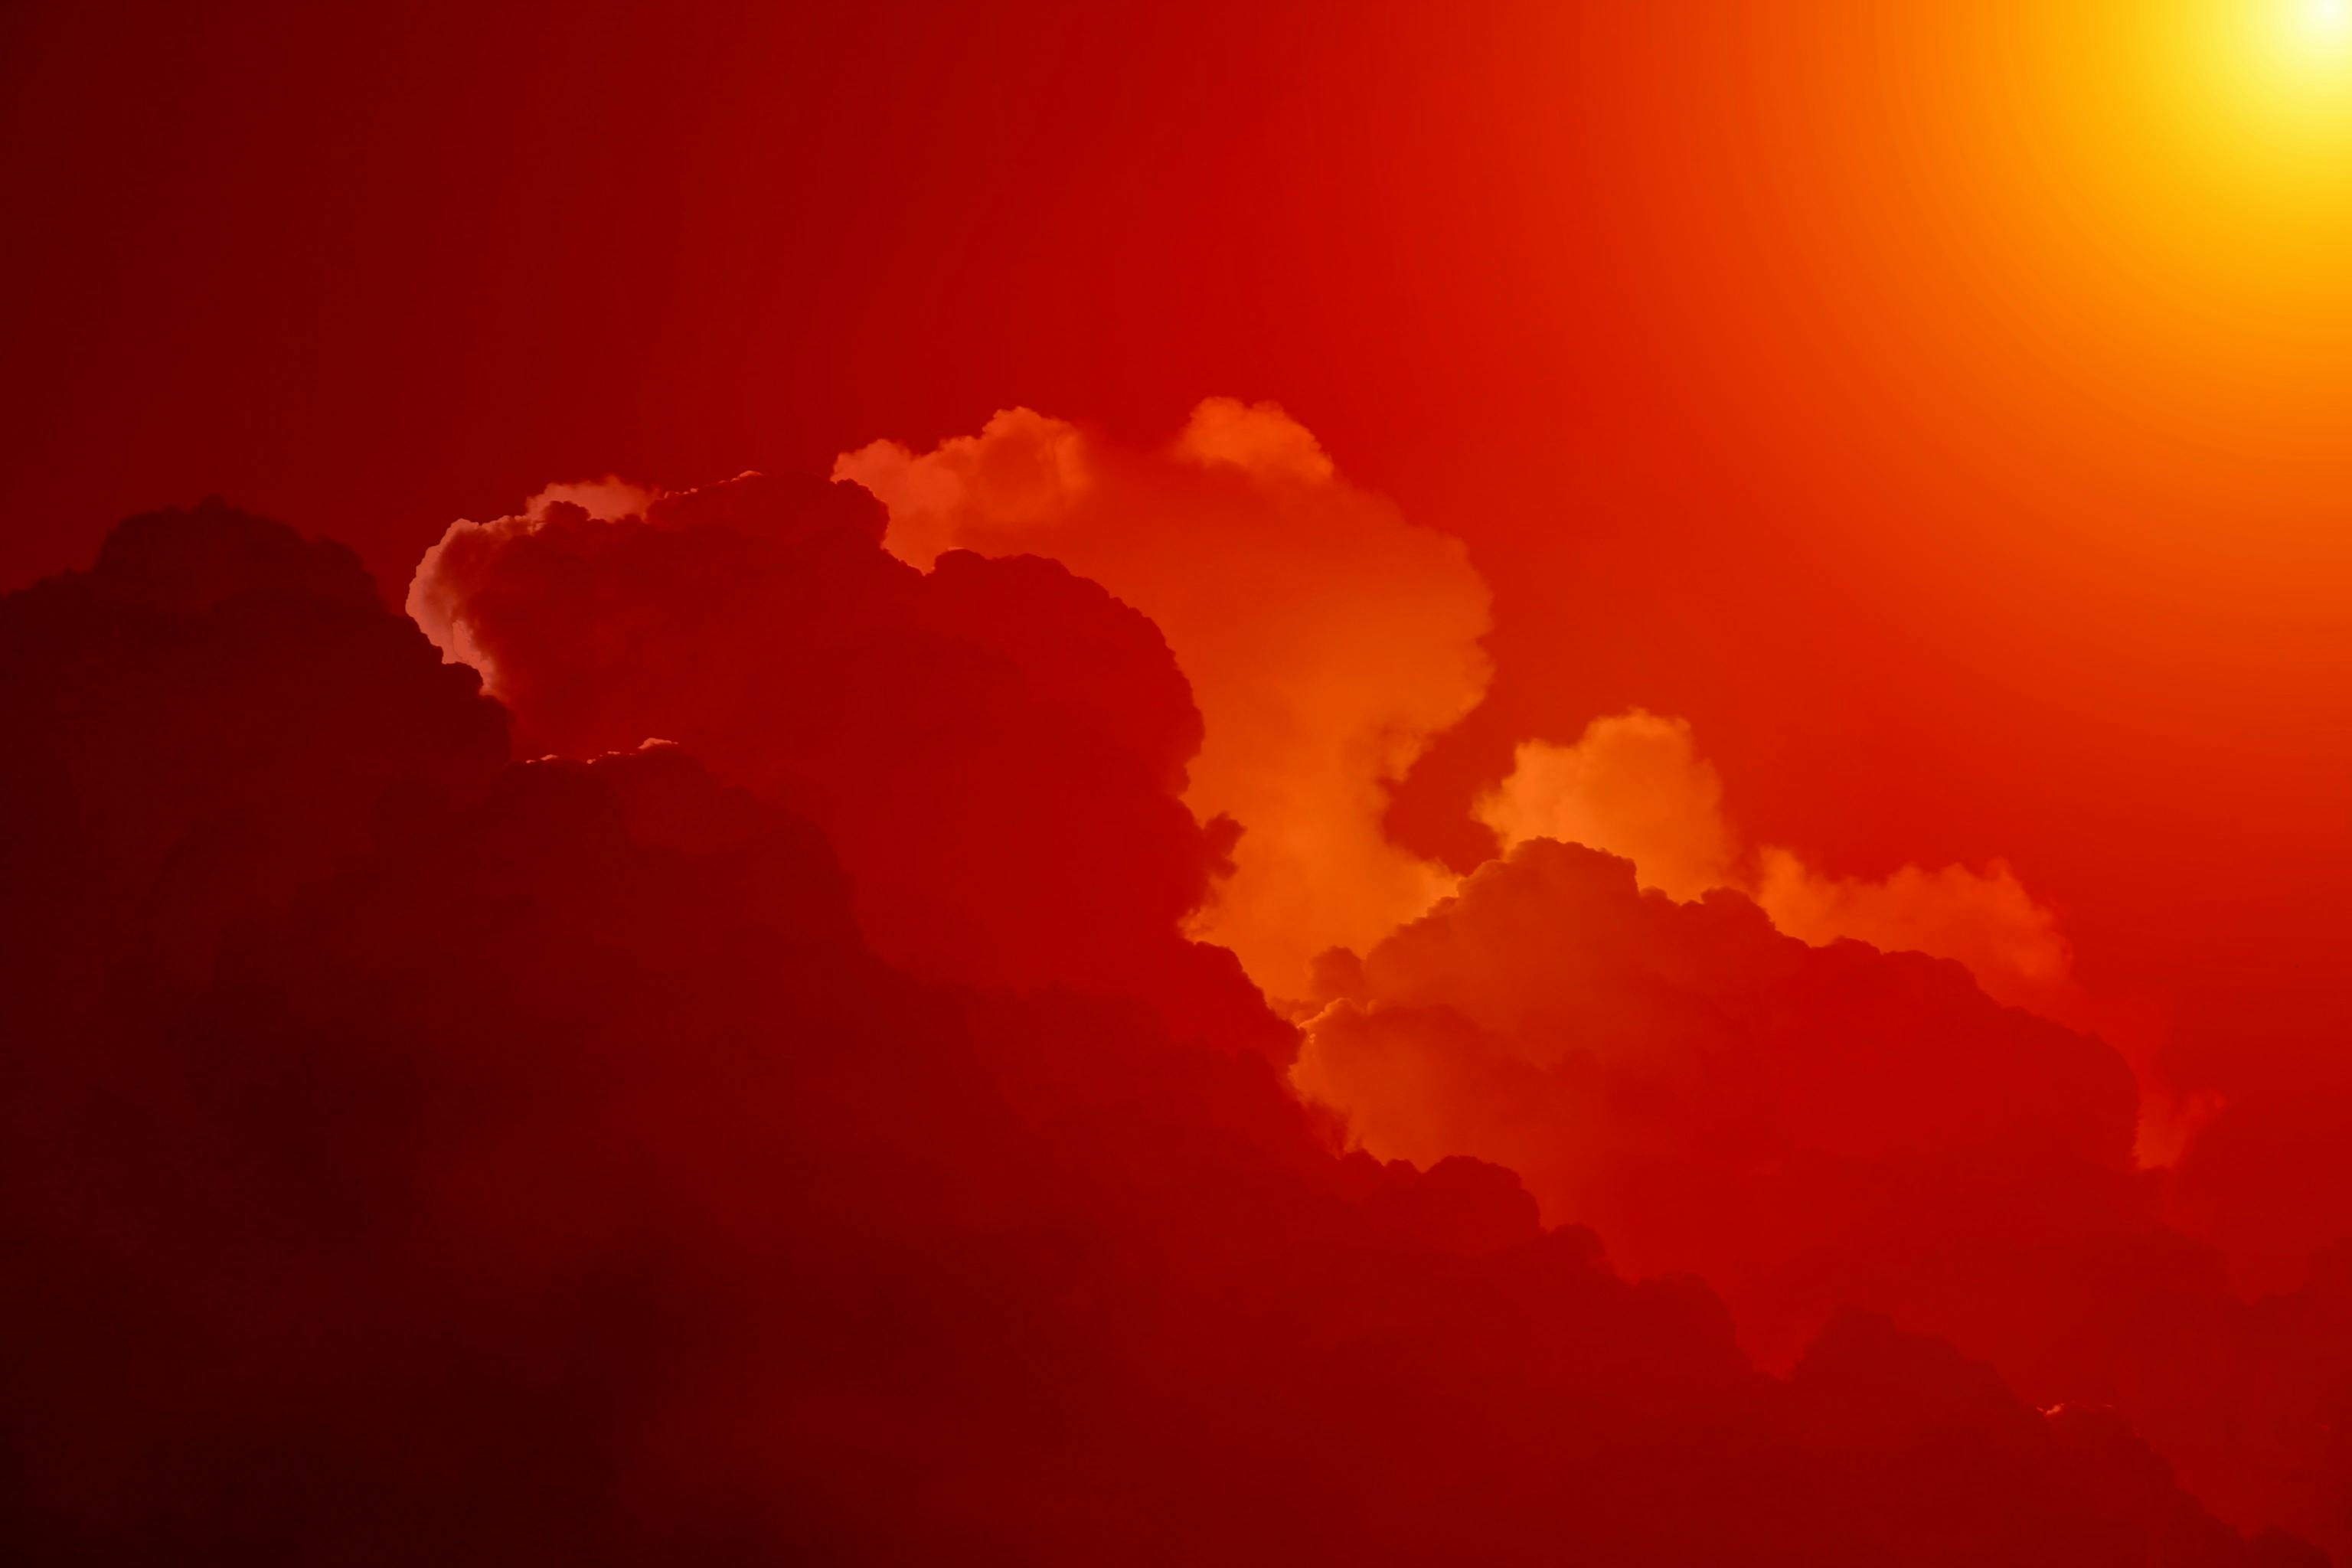 Bầu trời đỏ: Bầu trời đỏ rực rỡ, rực lửa là một trong những hình ảnh đẹp nhất của thiên nhiên. Đặc biệt, bầu trời đỏ mang đến cho chúng ta một cảm giác ấm áp, yên bình và tĩnh lặng. Hãy đắm mình trong khung cảnh này và cảm nhận sự thiên nhiên hoàn mỹ.